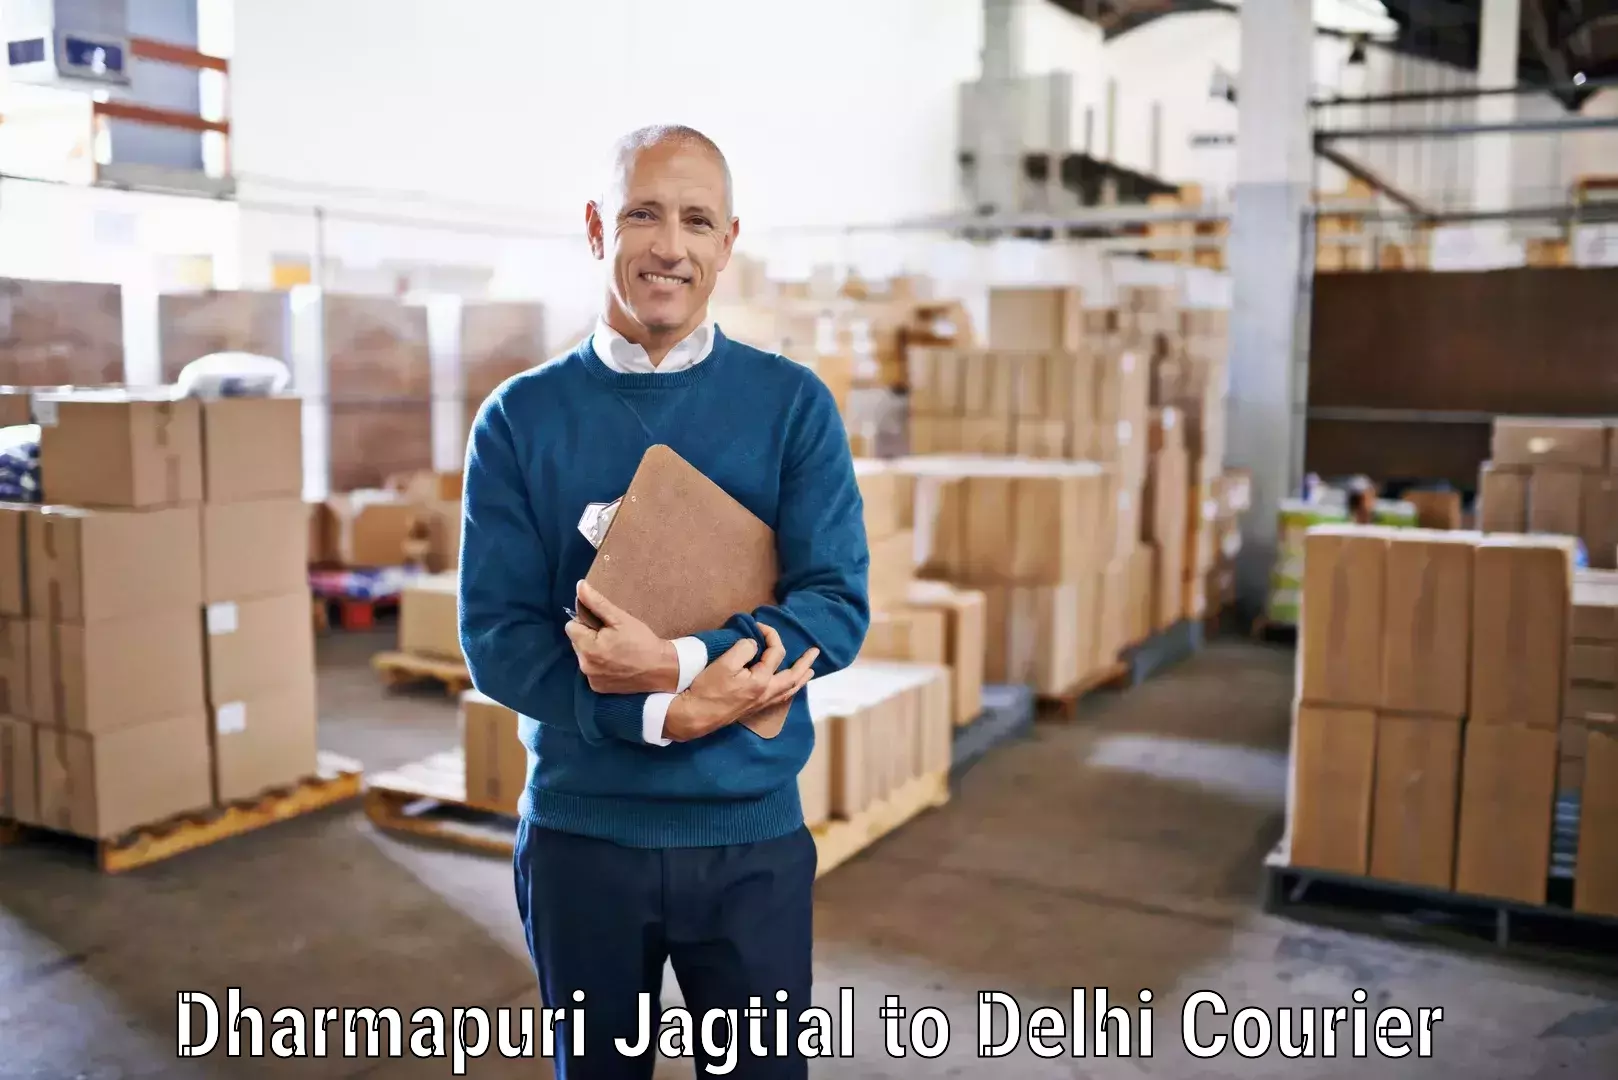 Individual parcel service Dharmapuri Jagtial to NCR